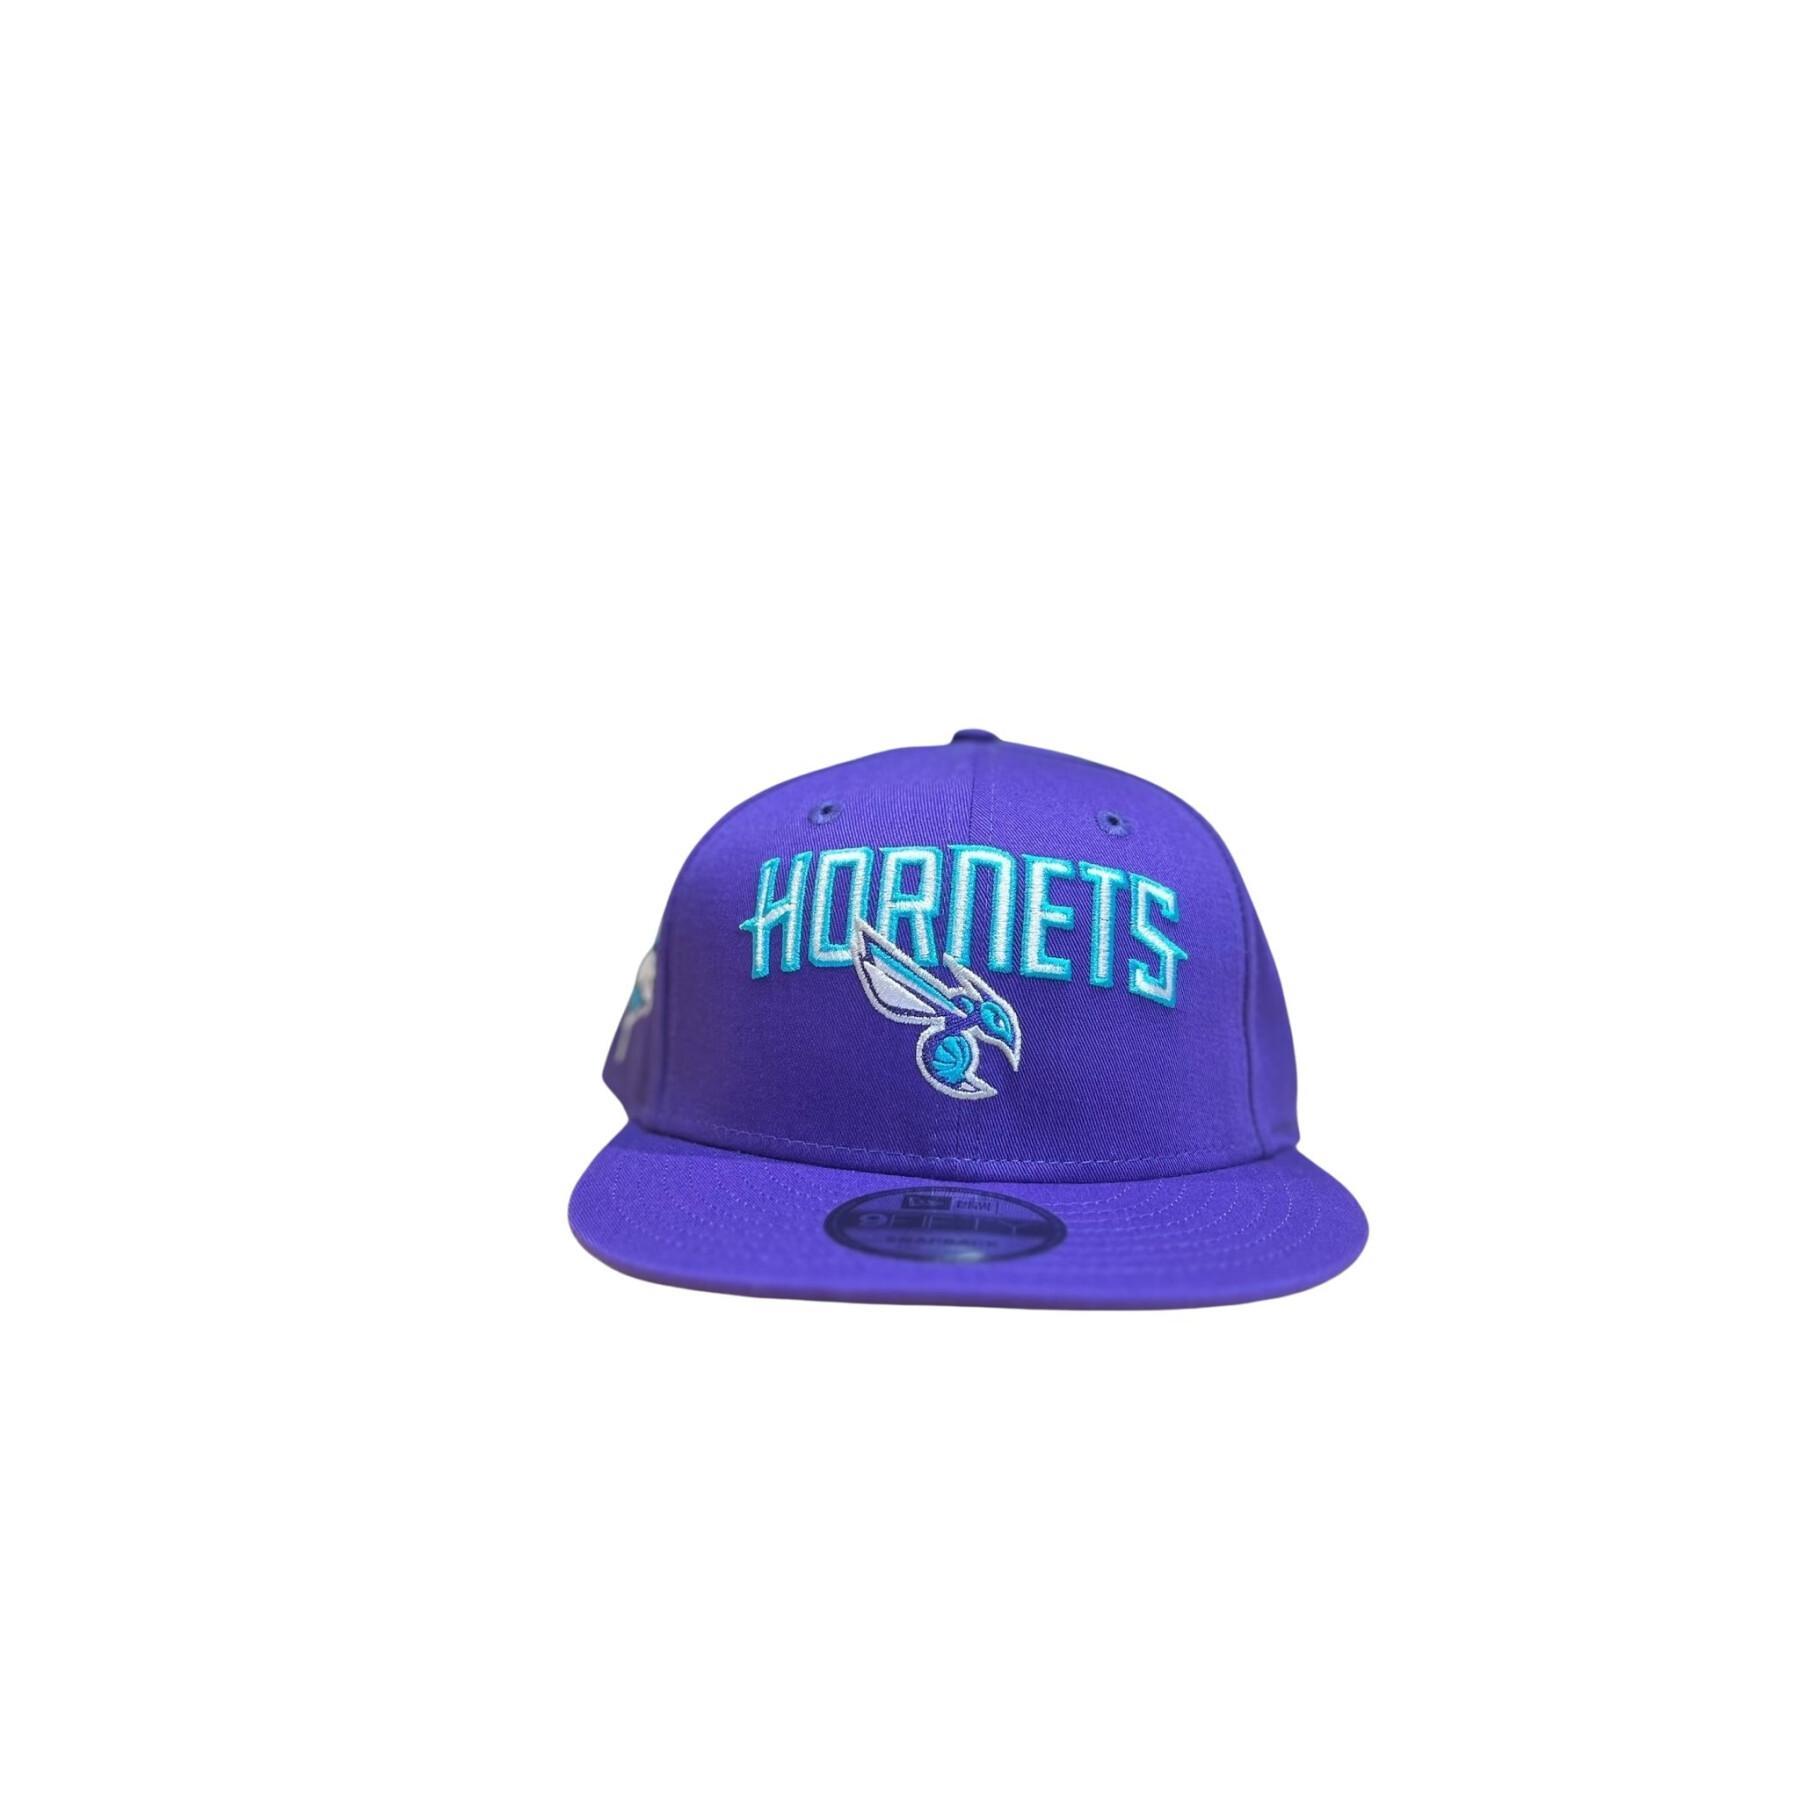 Cap 9fifty Hornets NBA